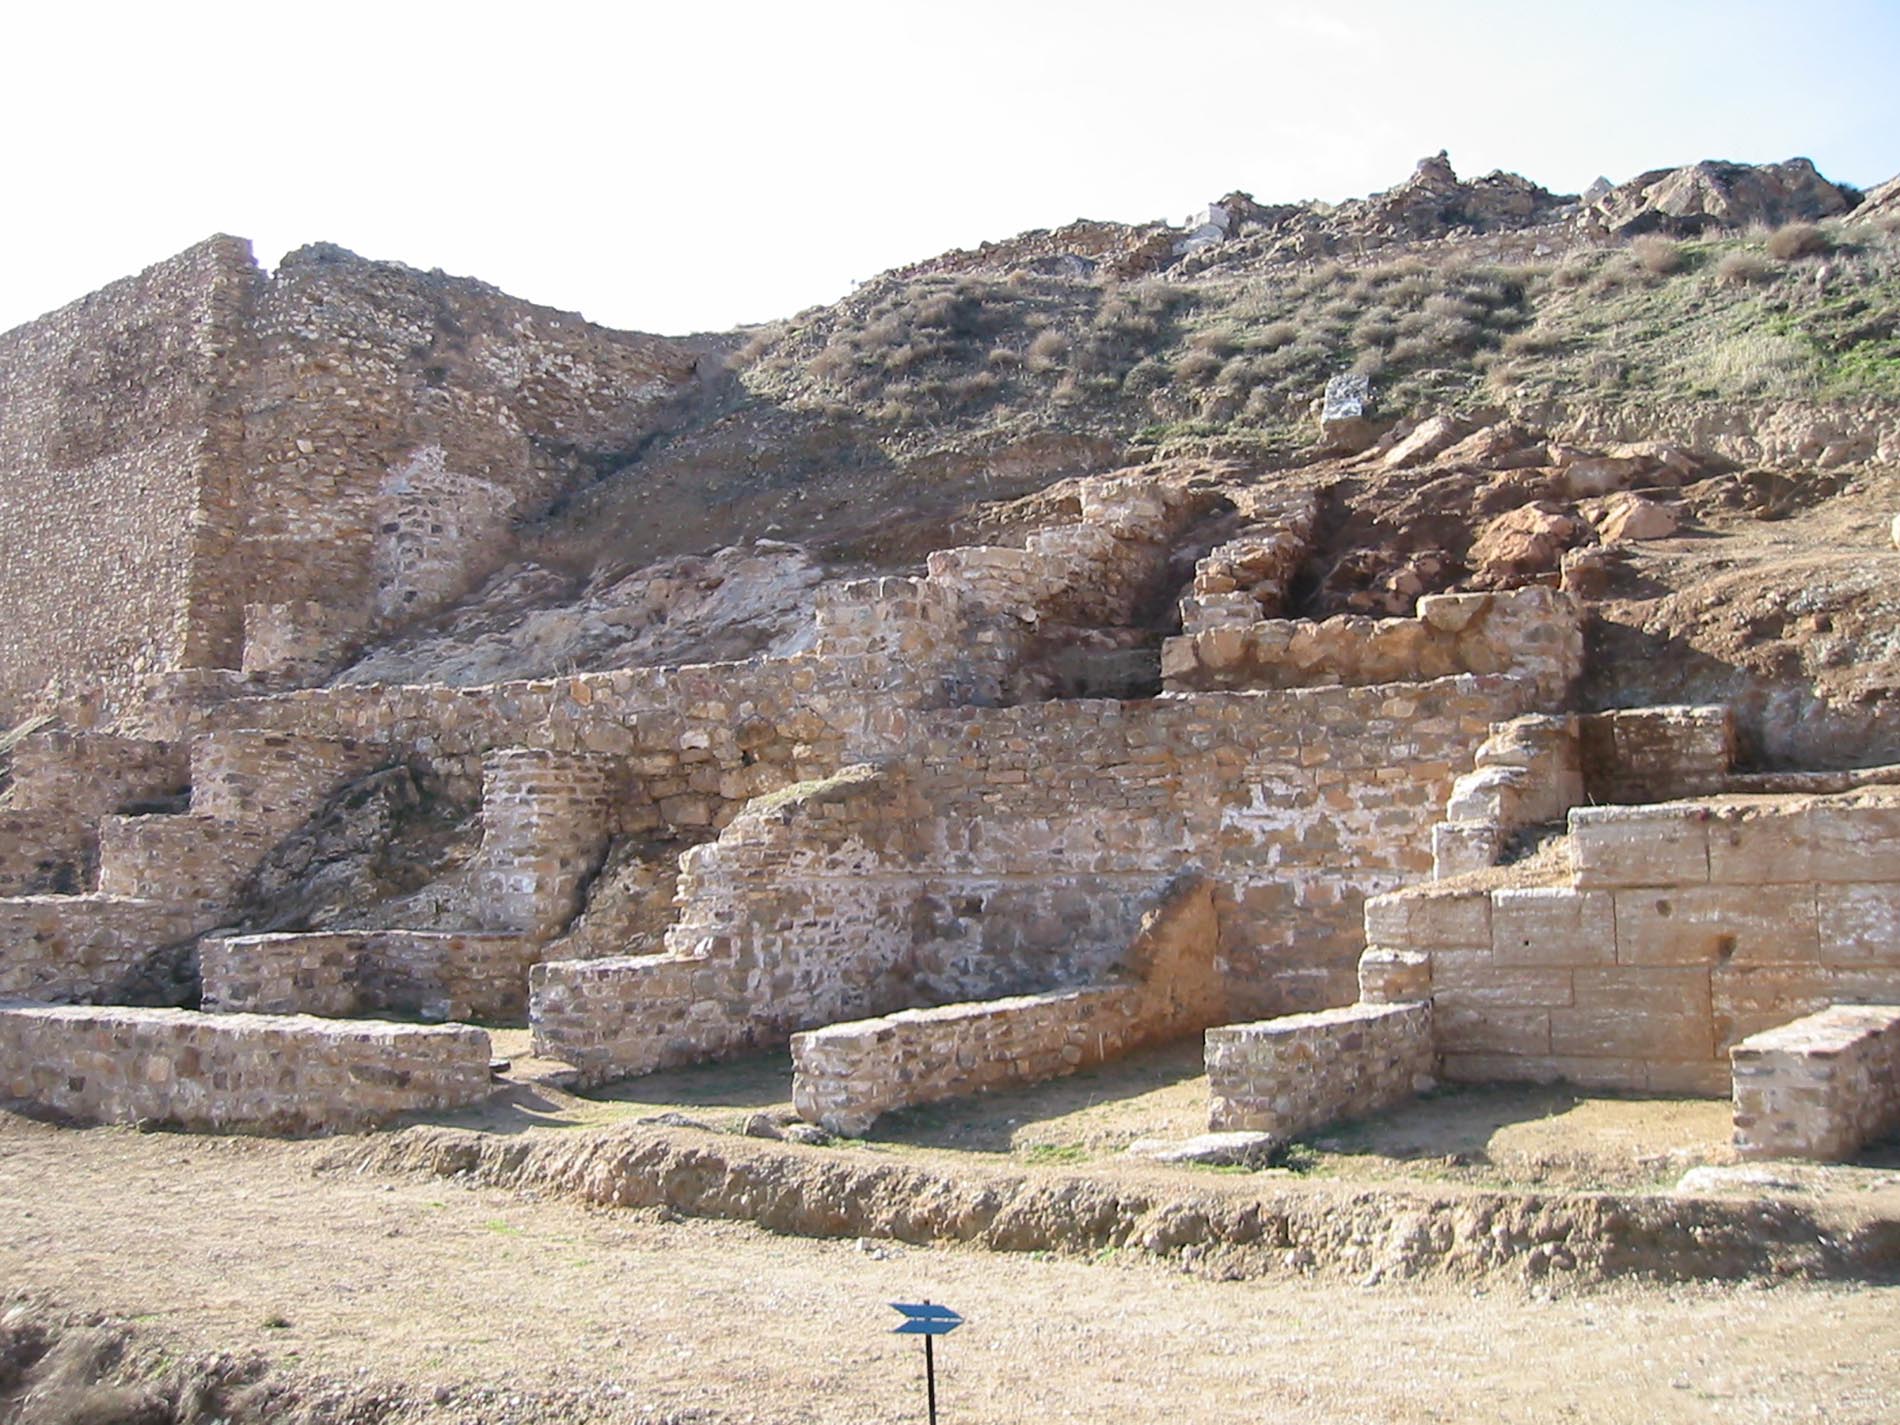 Vista del yacimiento arqueológico de Bílbilis, Calatayud. Foto: Juan Carlos Gil Ballano